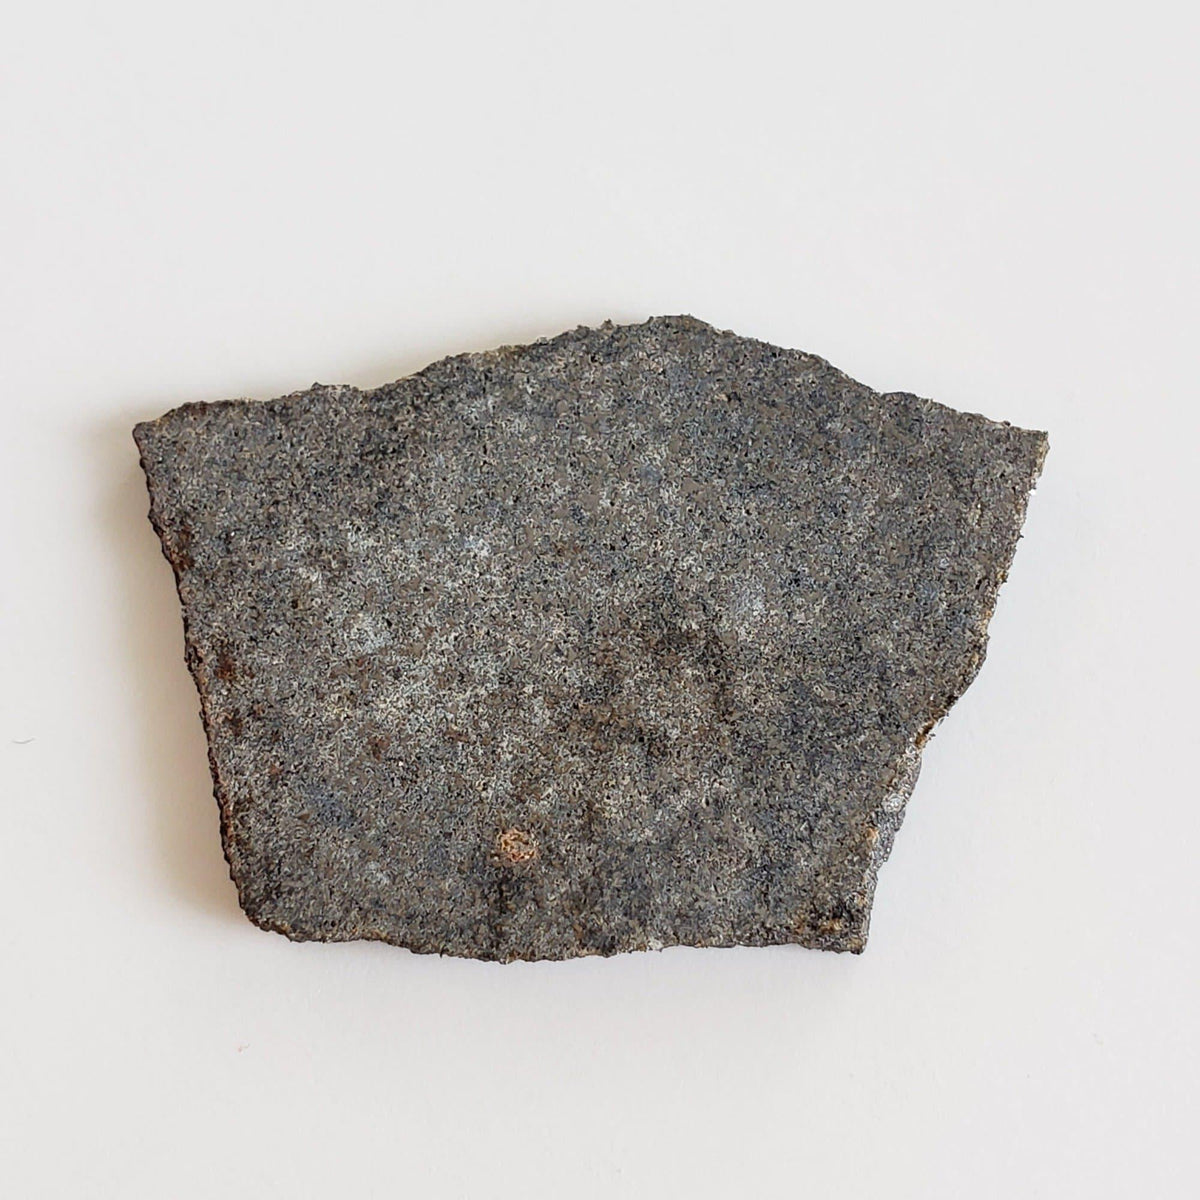 Big Rock Donga Meteorite | 3.98 Grams | Slice | H6 Chondrite | Australia